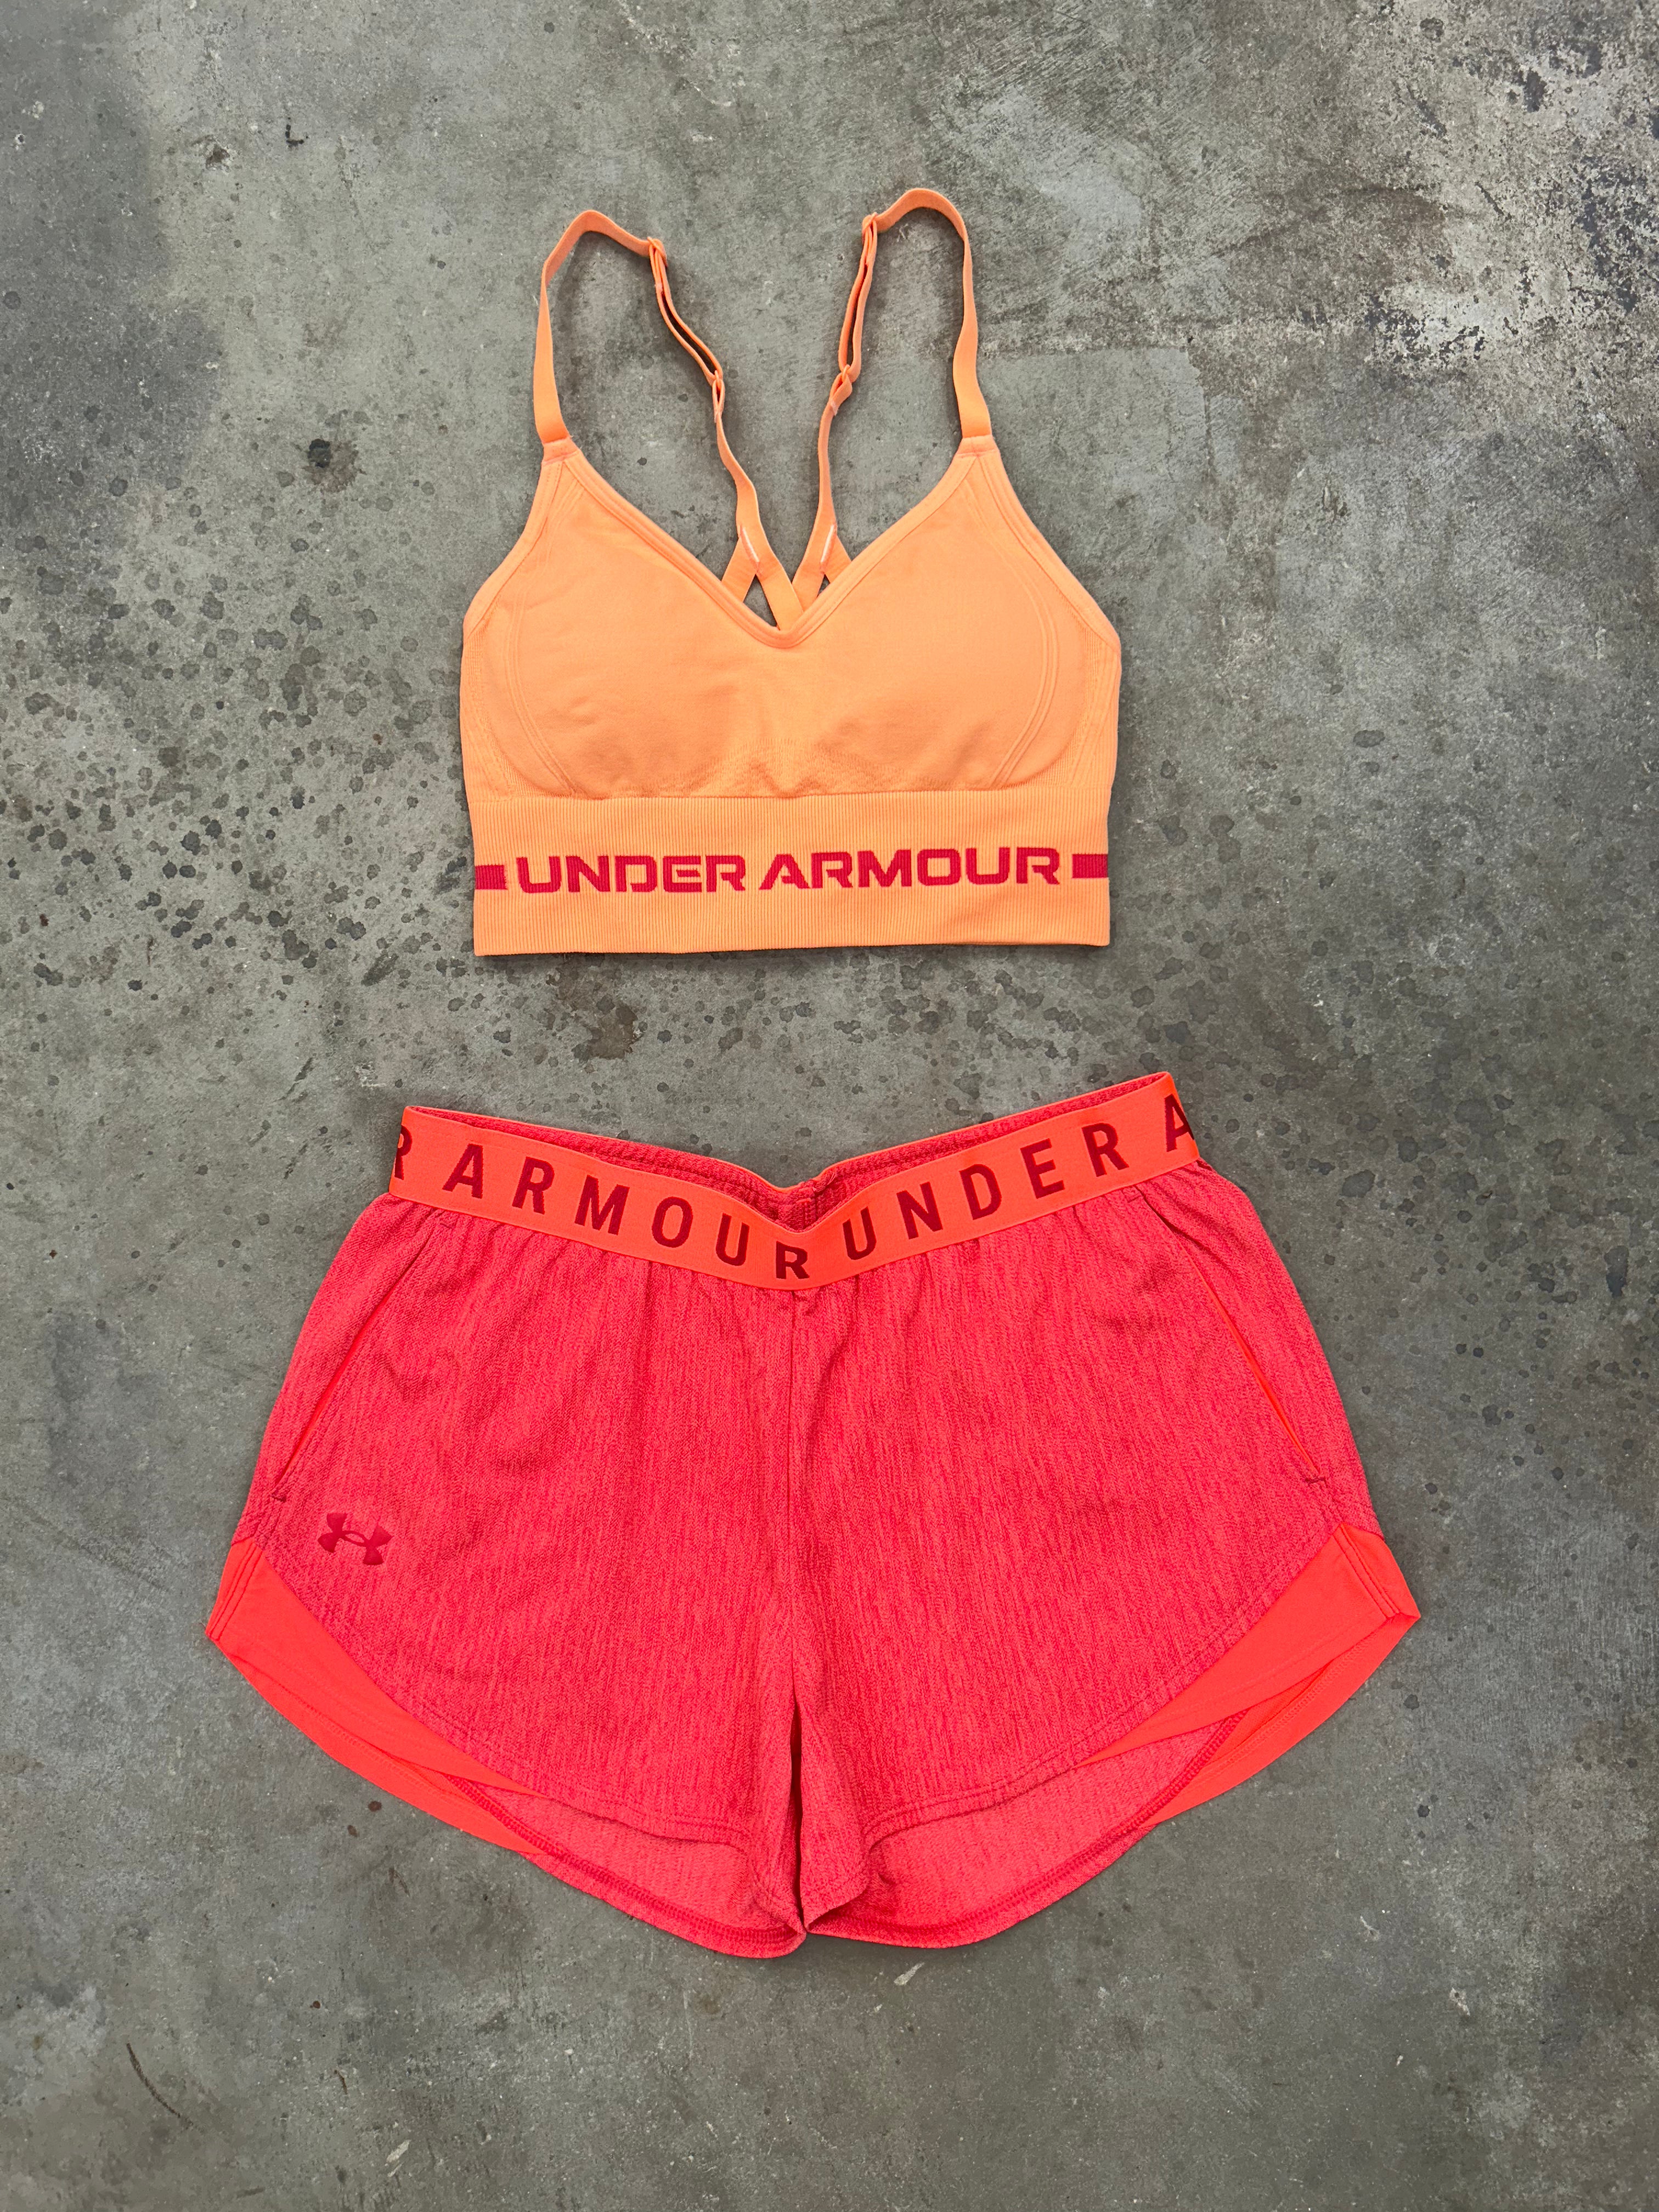 Under Armour Womens Sz: L Speedpocket Shorts 1323872 690 Peach Orange​